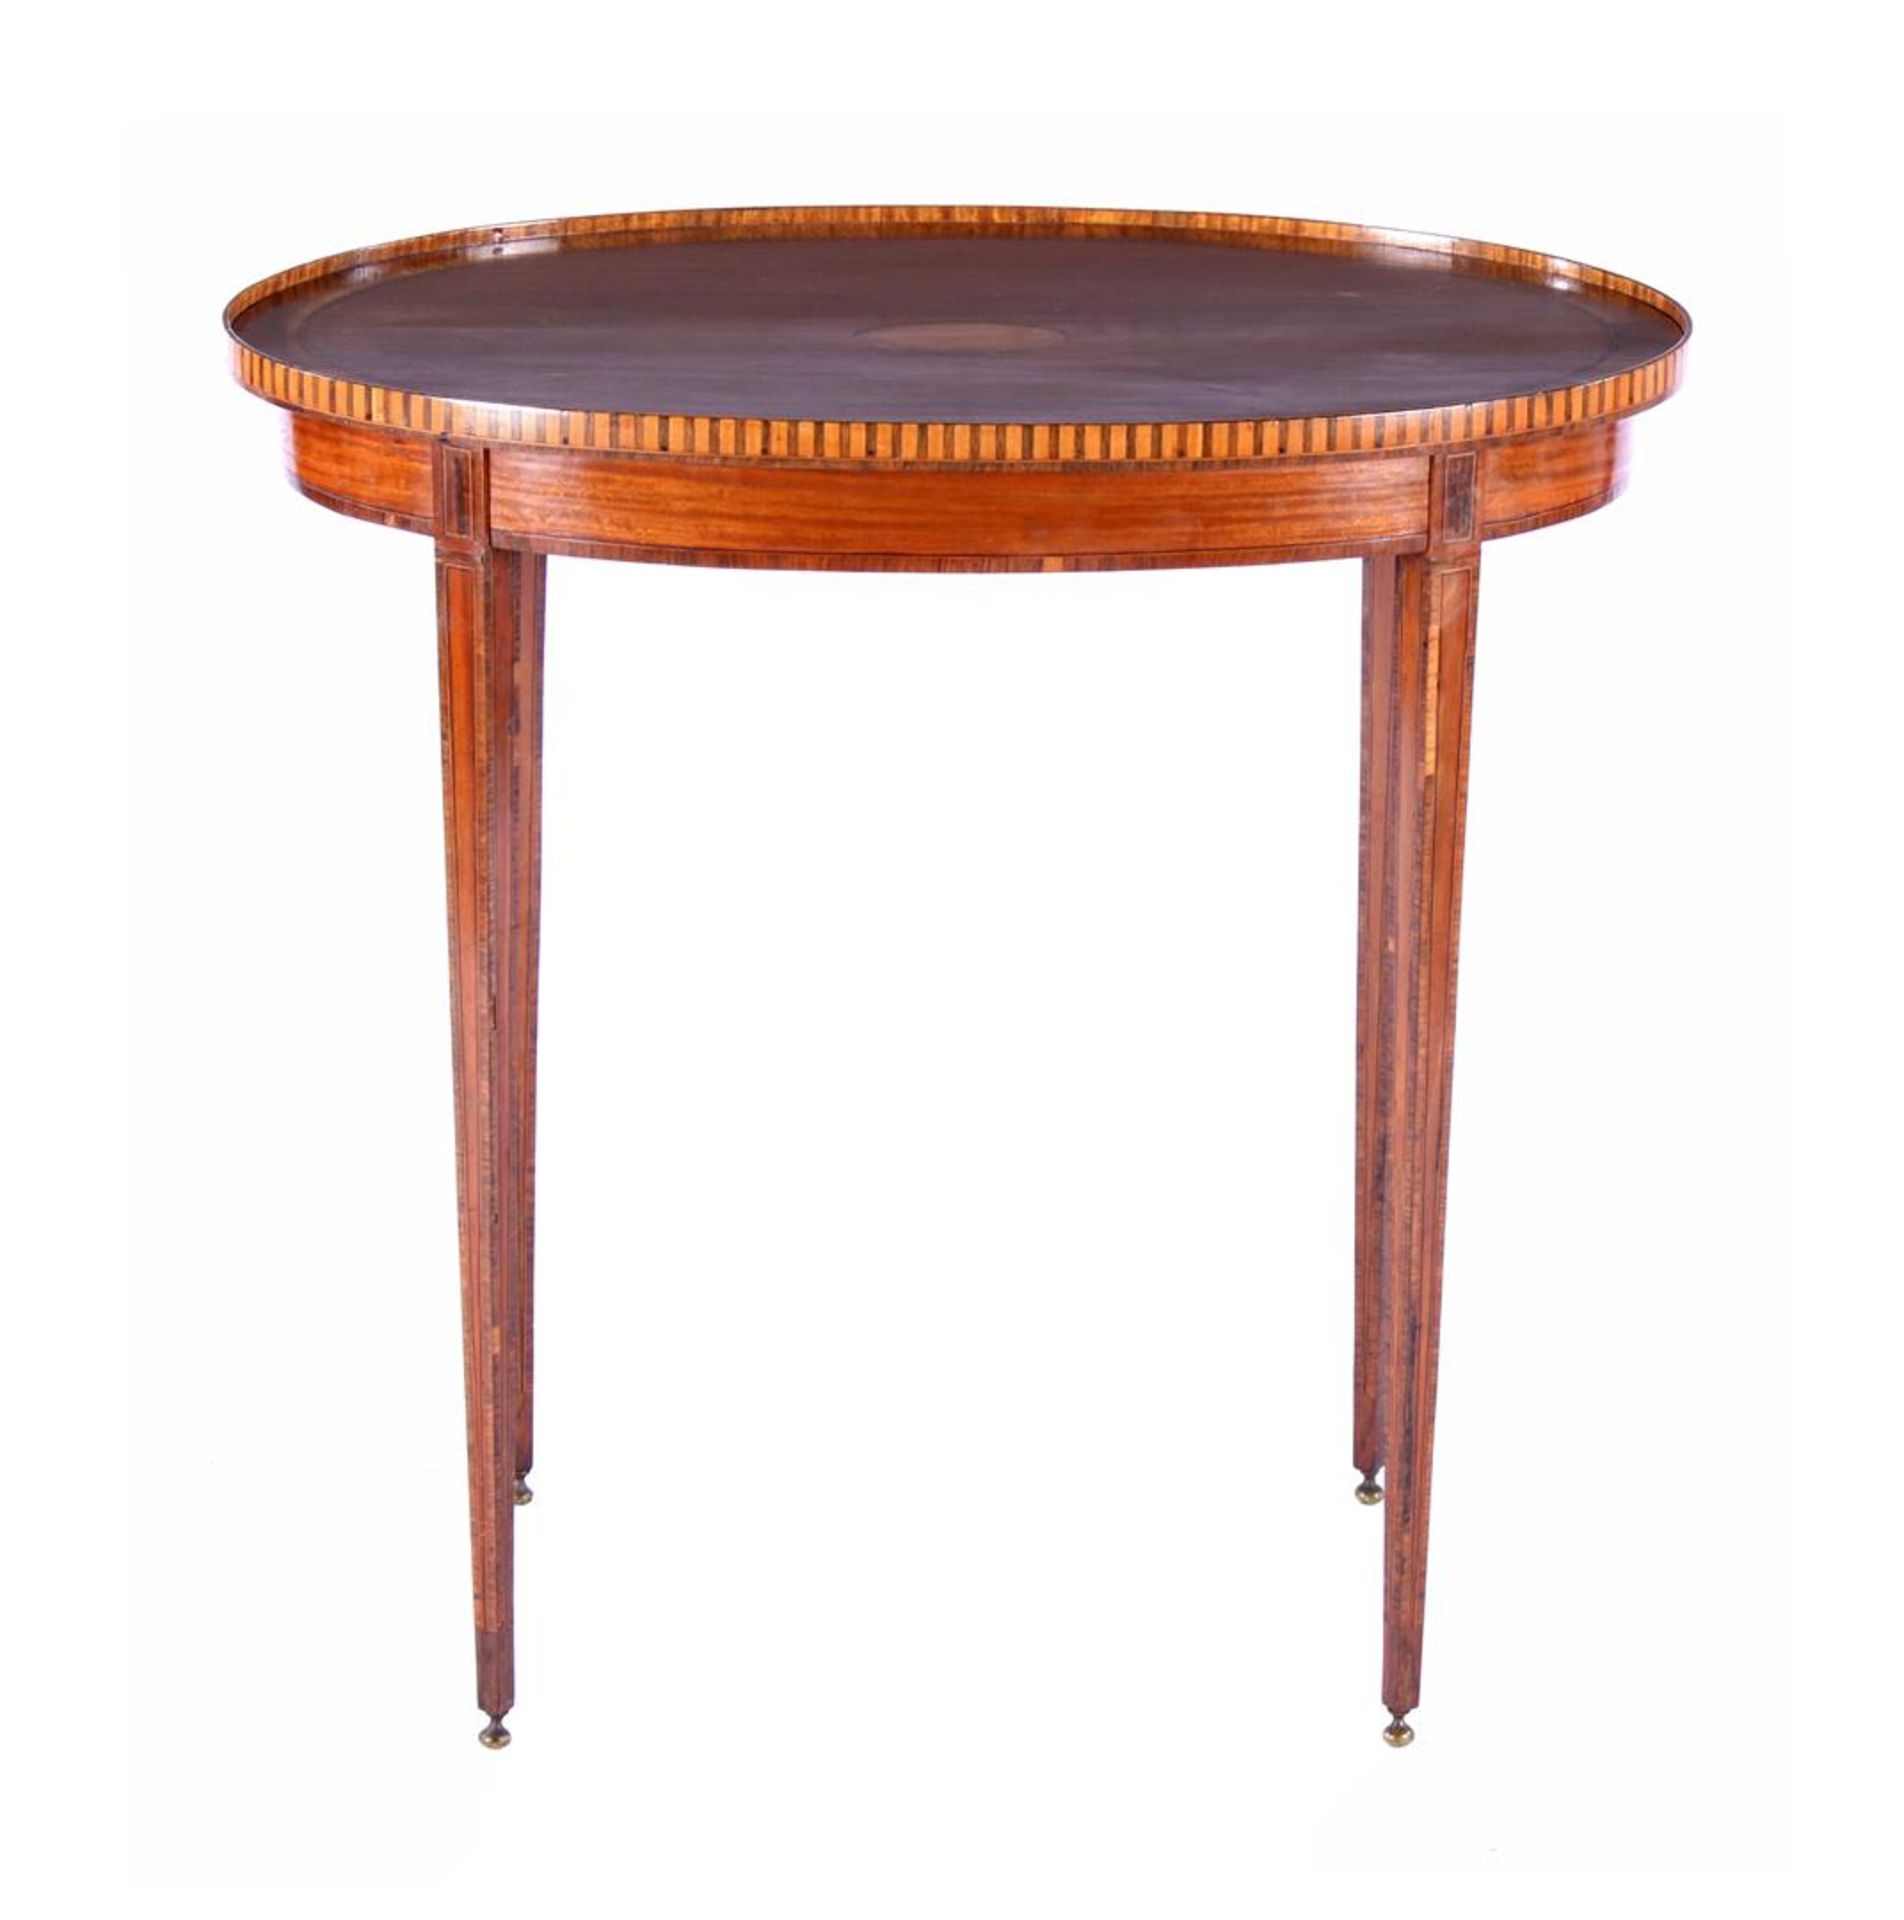 Ovaal Louis Seizestijl tafeltje met meerdere houtsoorten fineer, intarsia en blad met opstaande rand